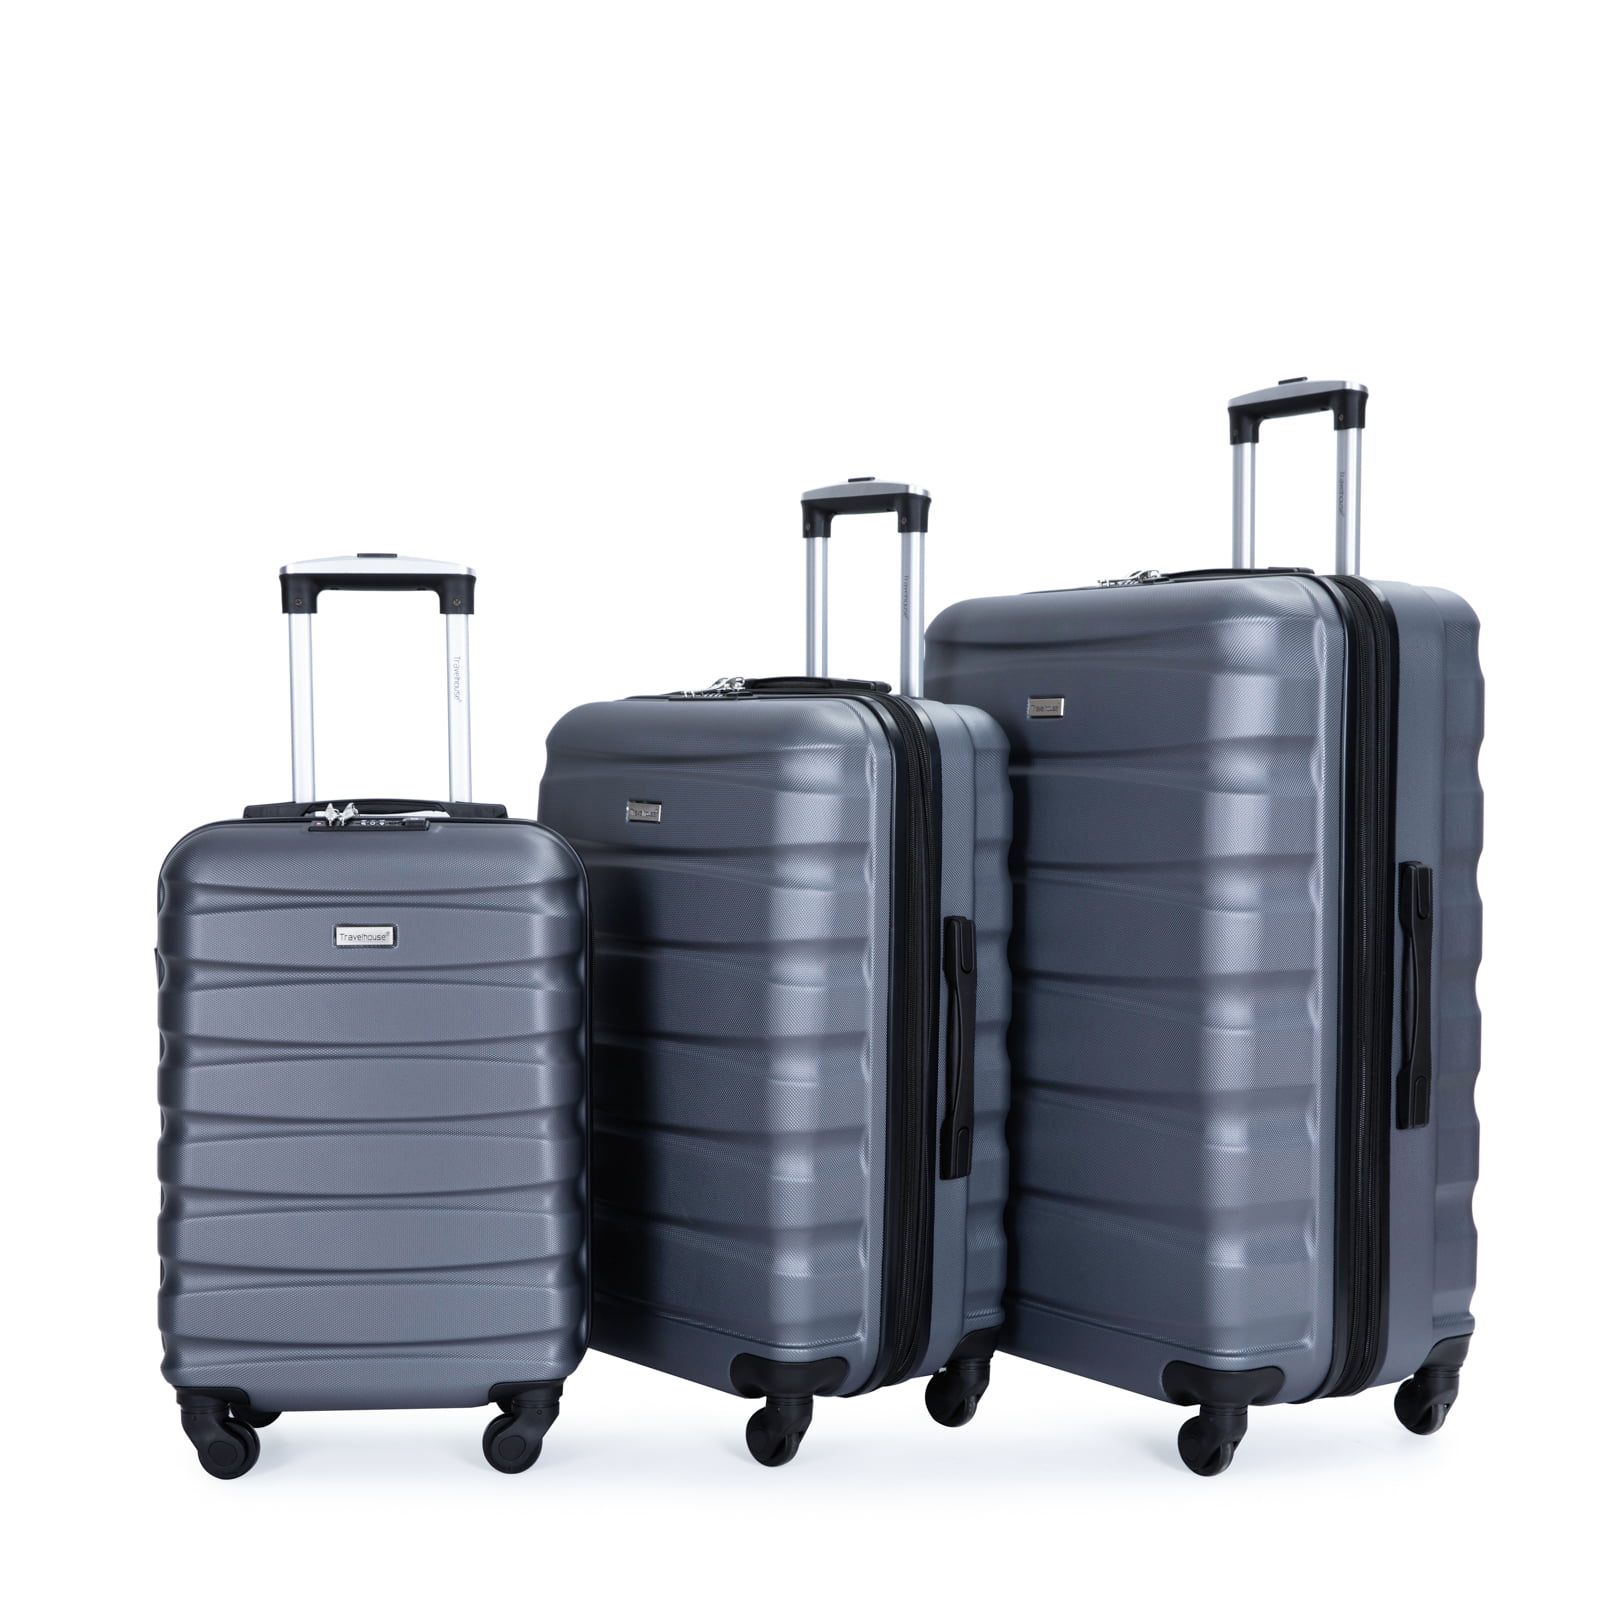 Travelhouse 3 Piece Luggage Set Expandable Hardshell Lightweight ...